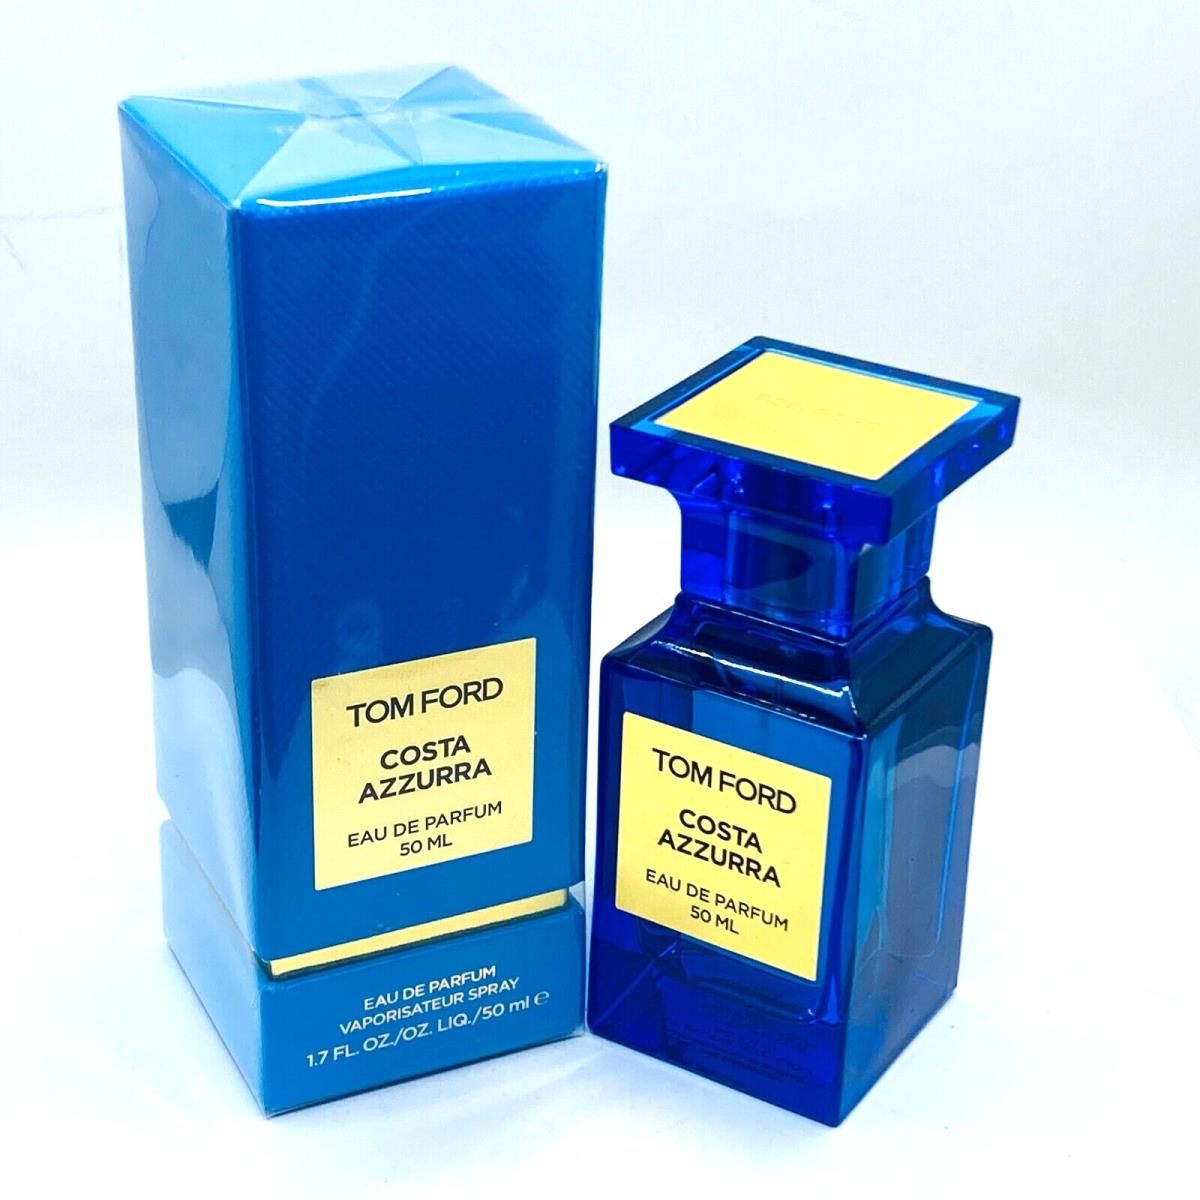 Tom Ford Costa Azzurra Women`s Eau de Parfum Spray- 1.7fl oz/50ml - Rare